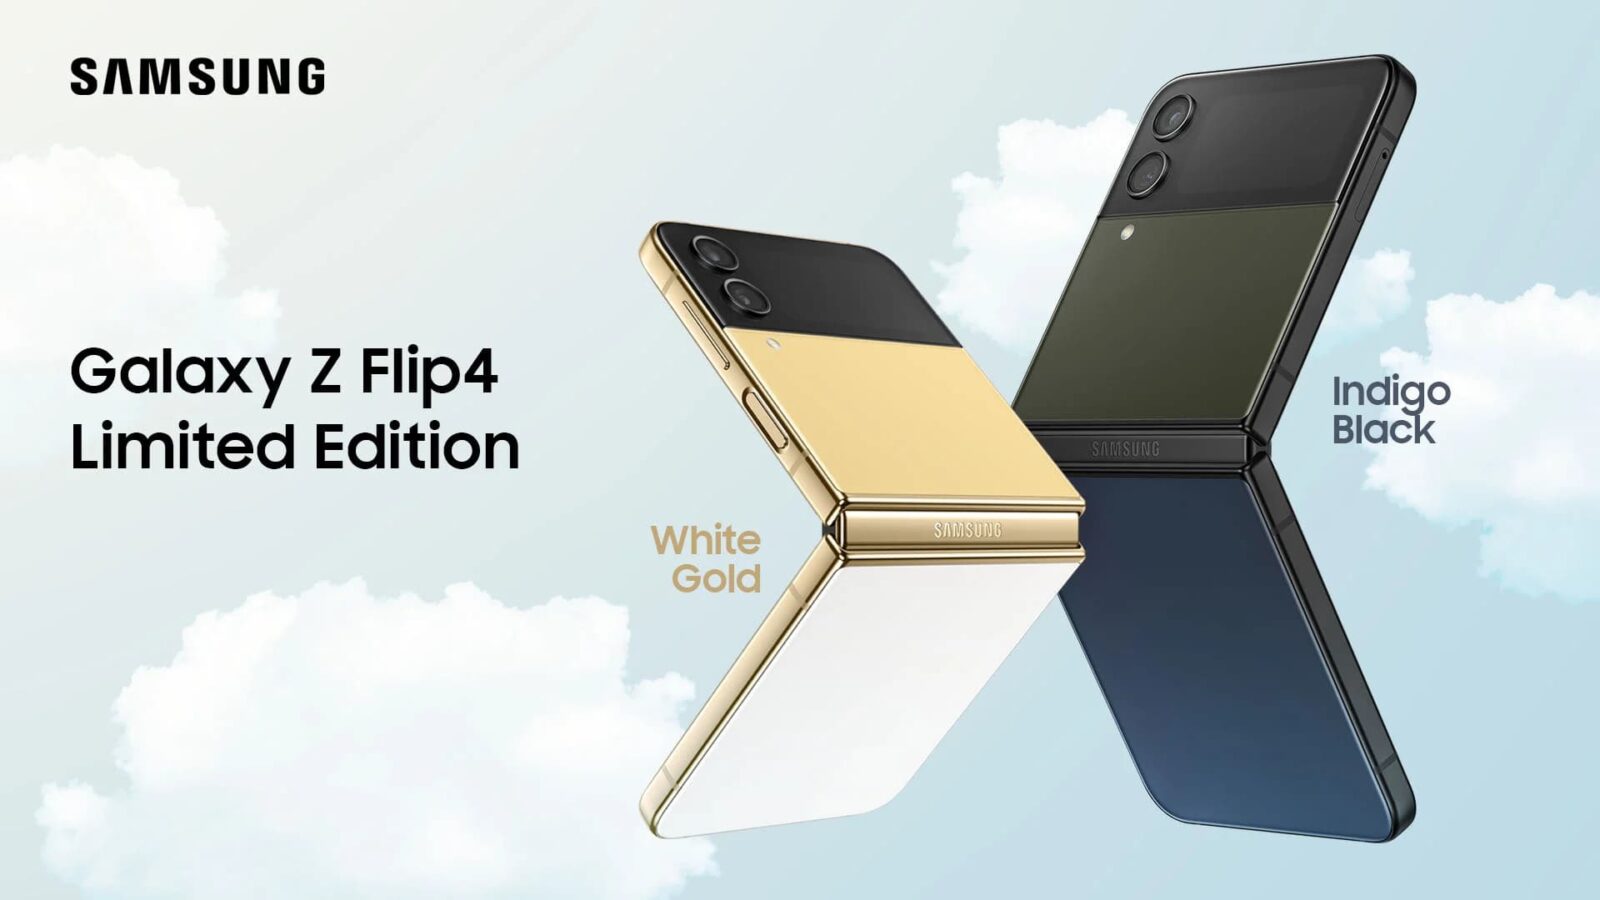 Galaxy Z Flip 4 nouveaux coloris disponibles